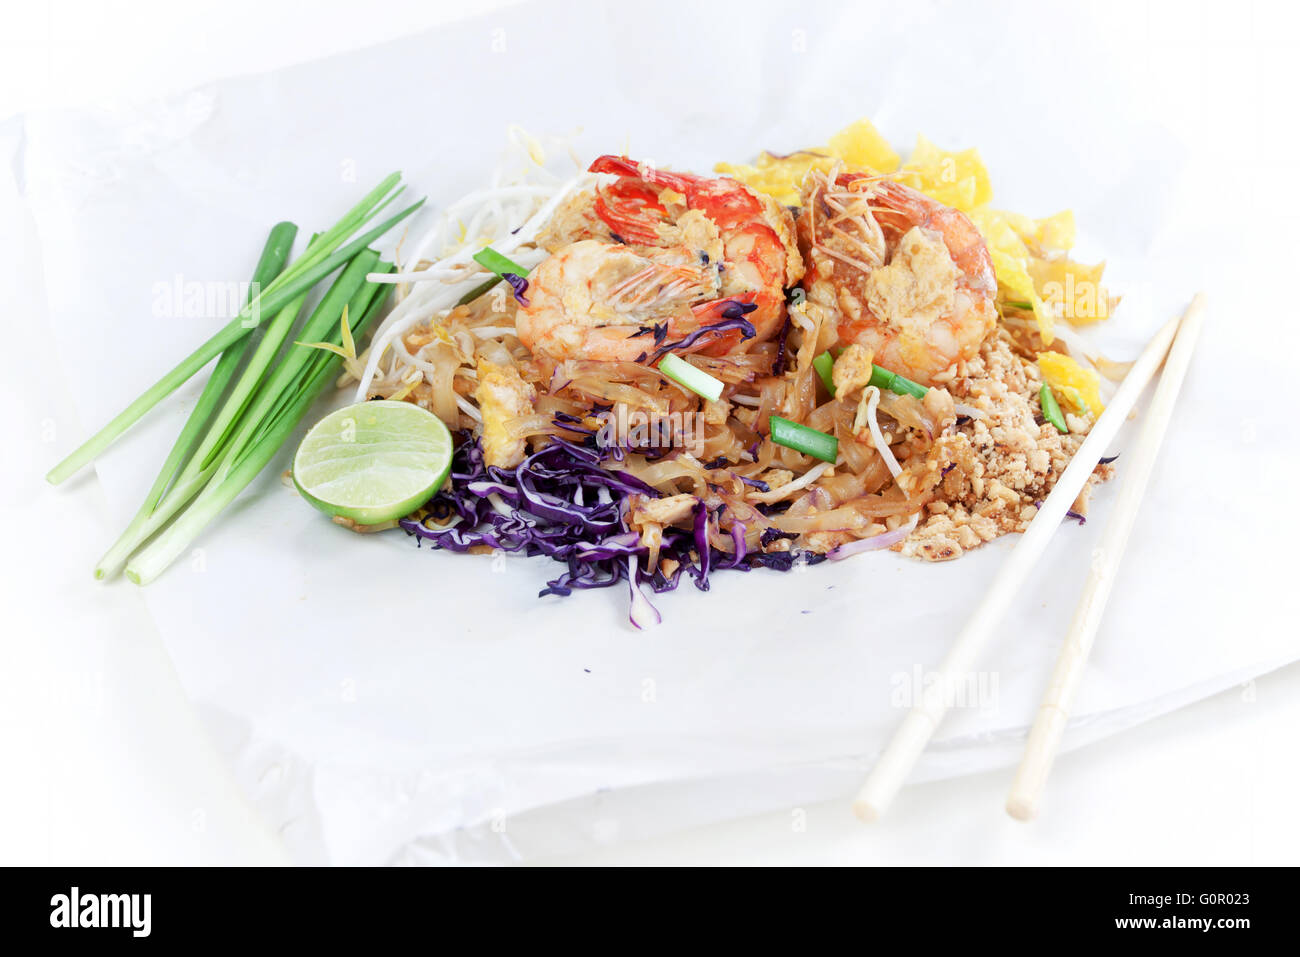 Spaghettini fritti in stile Thai con gamberi. Friggere gli spaghetti con i gamberi in (Pad Thai) cucina tailandese sul colore bianco involucro alimentare. Foto Stock